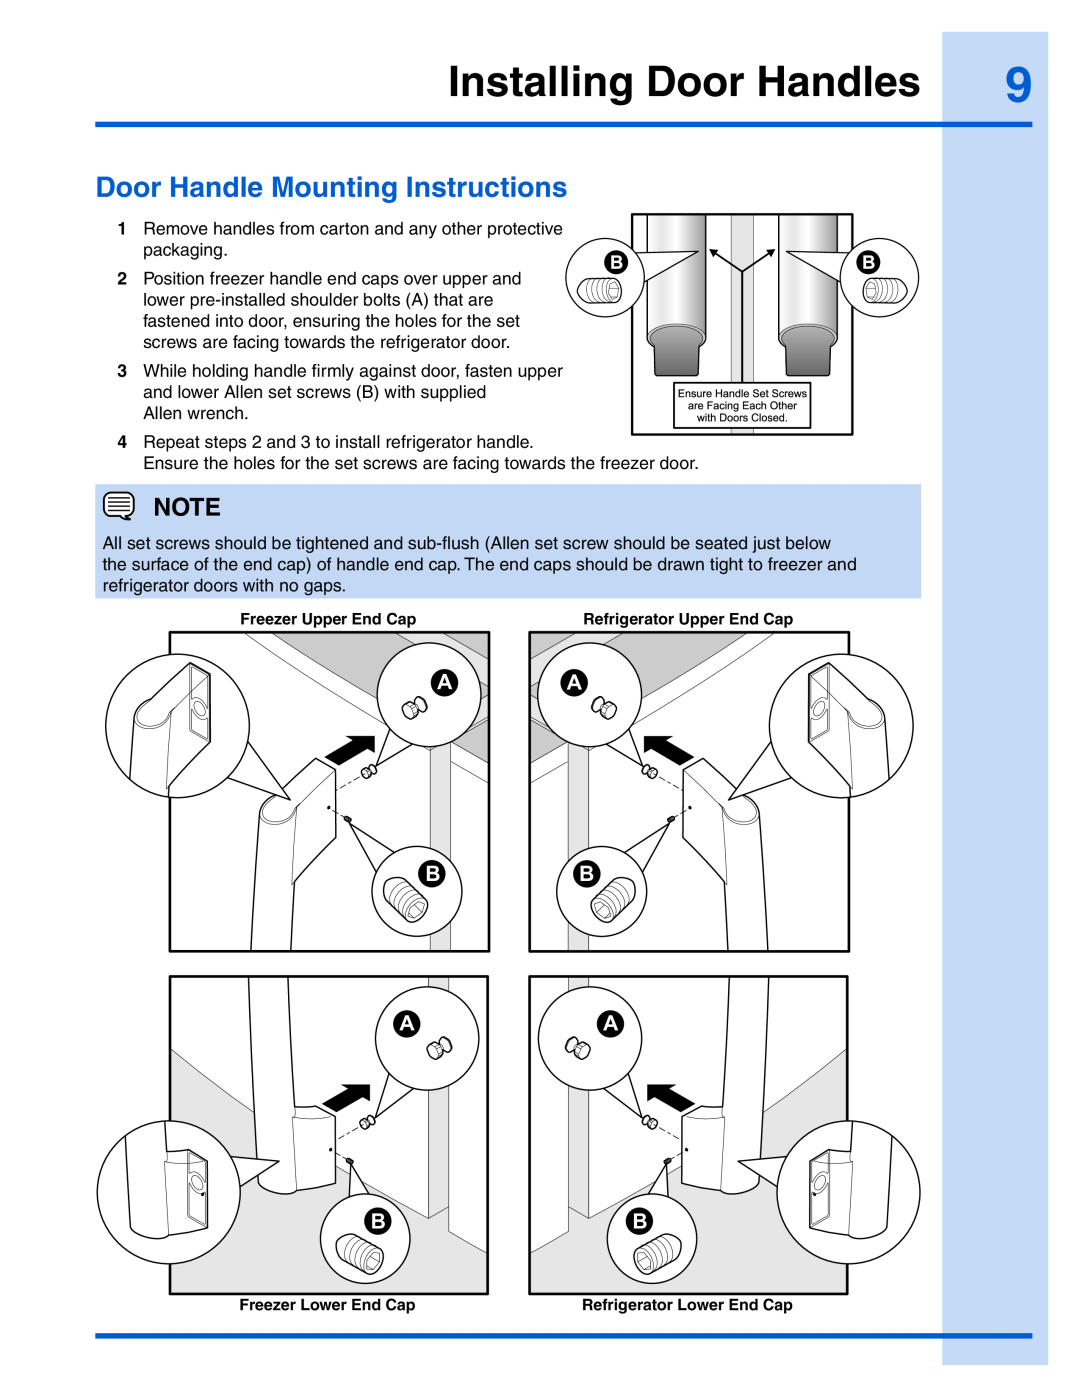 Electrolux 241868904 manual Installing Door Handles, Door Handle Mounting Instructions 